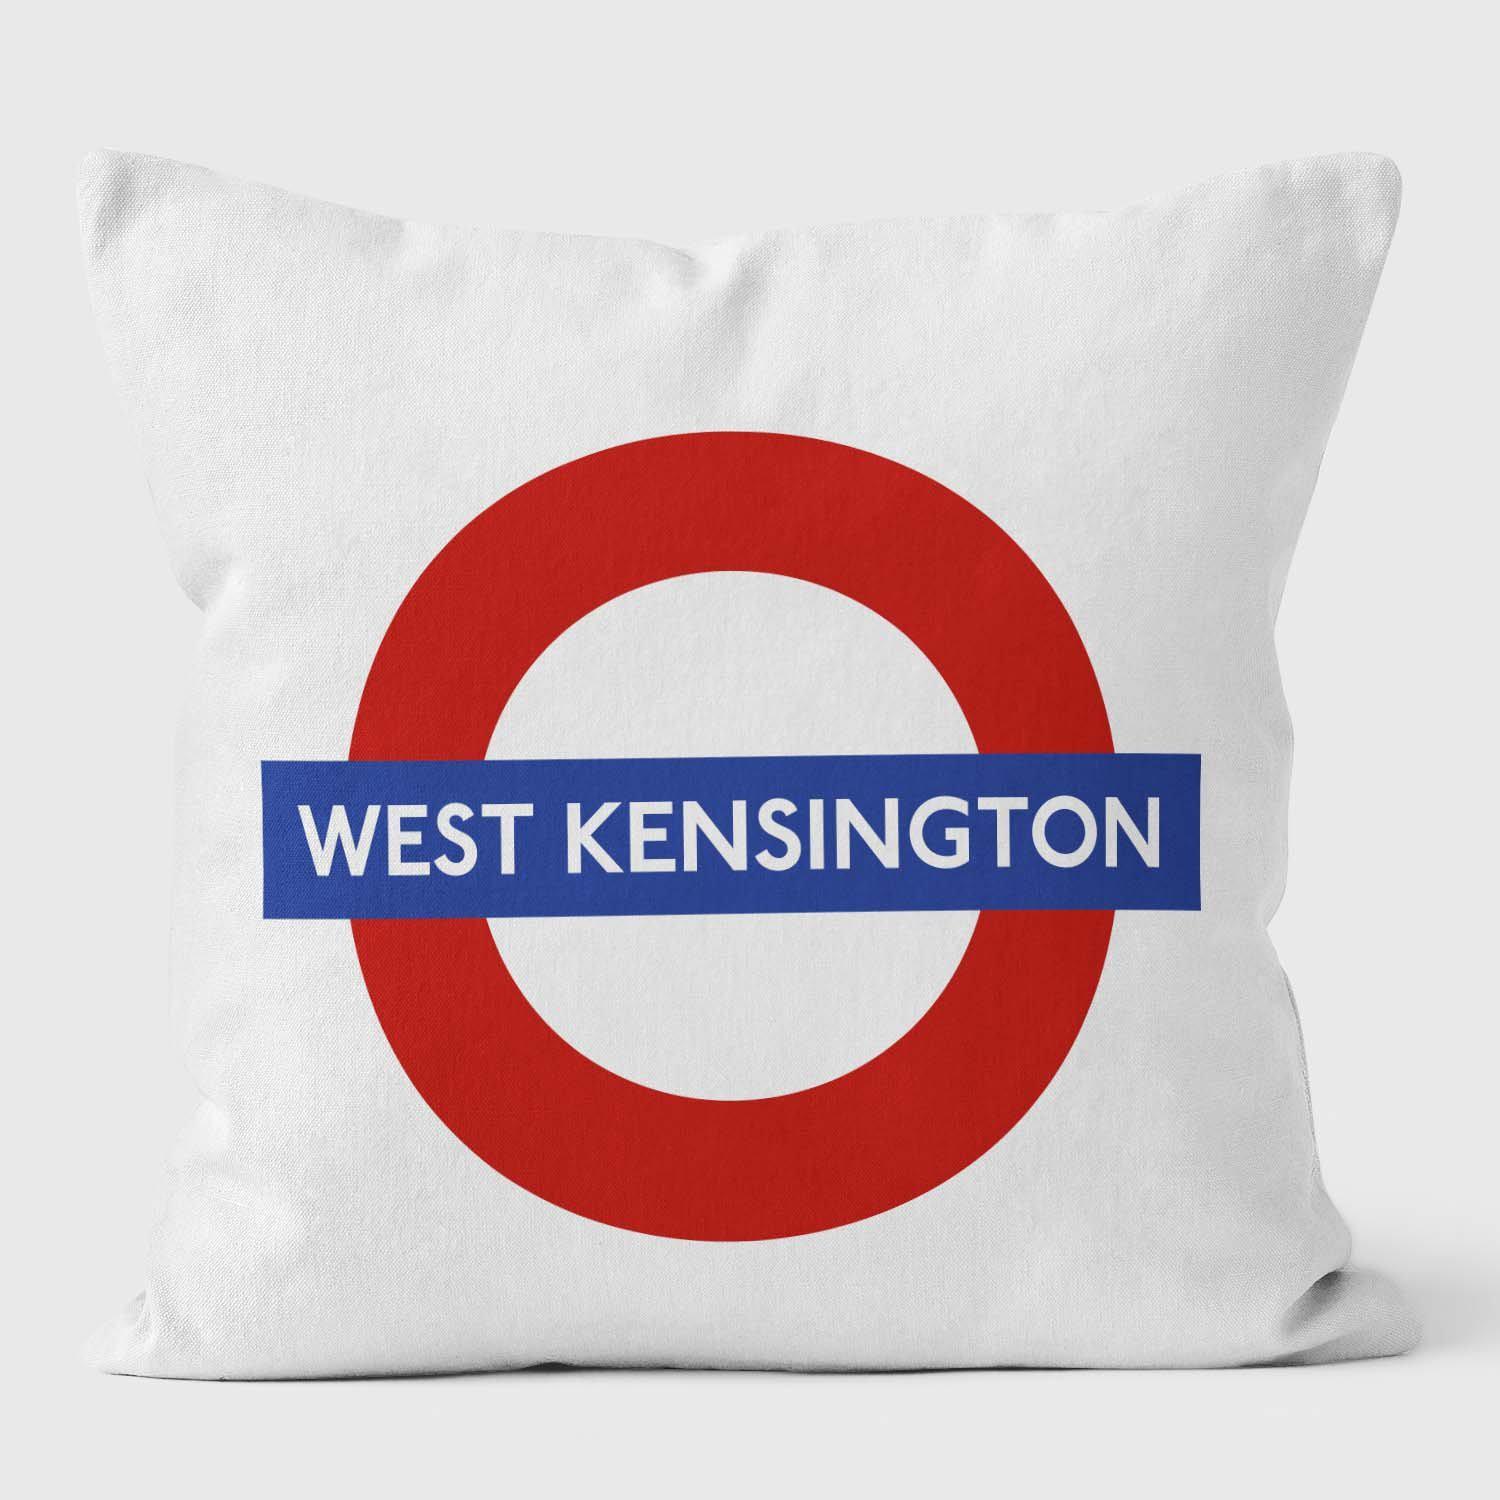 West Kensington London Underground Tube Station Roundel Cushion - Handmade Cushions UK - WeLoveCushions